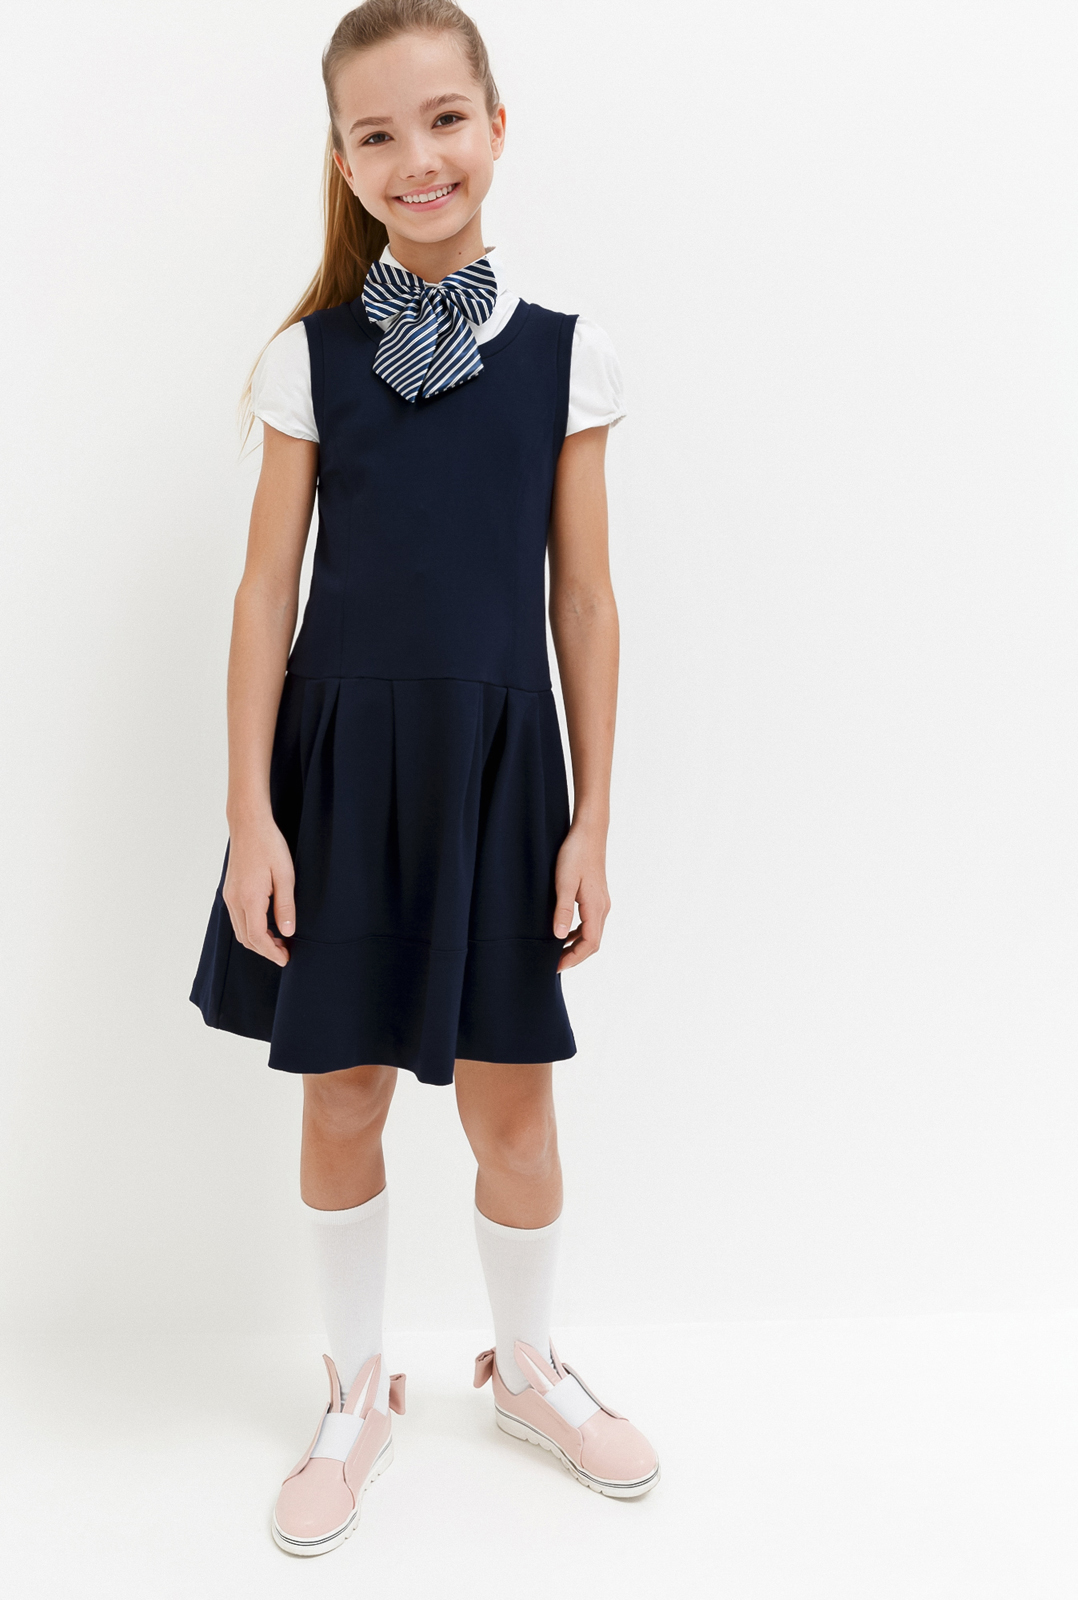 Платье для девочки Acoola Columbine, цвет: темно-голубой. 20240200028_600. Размер 152